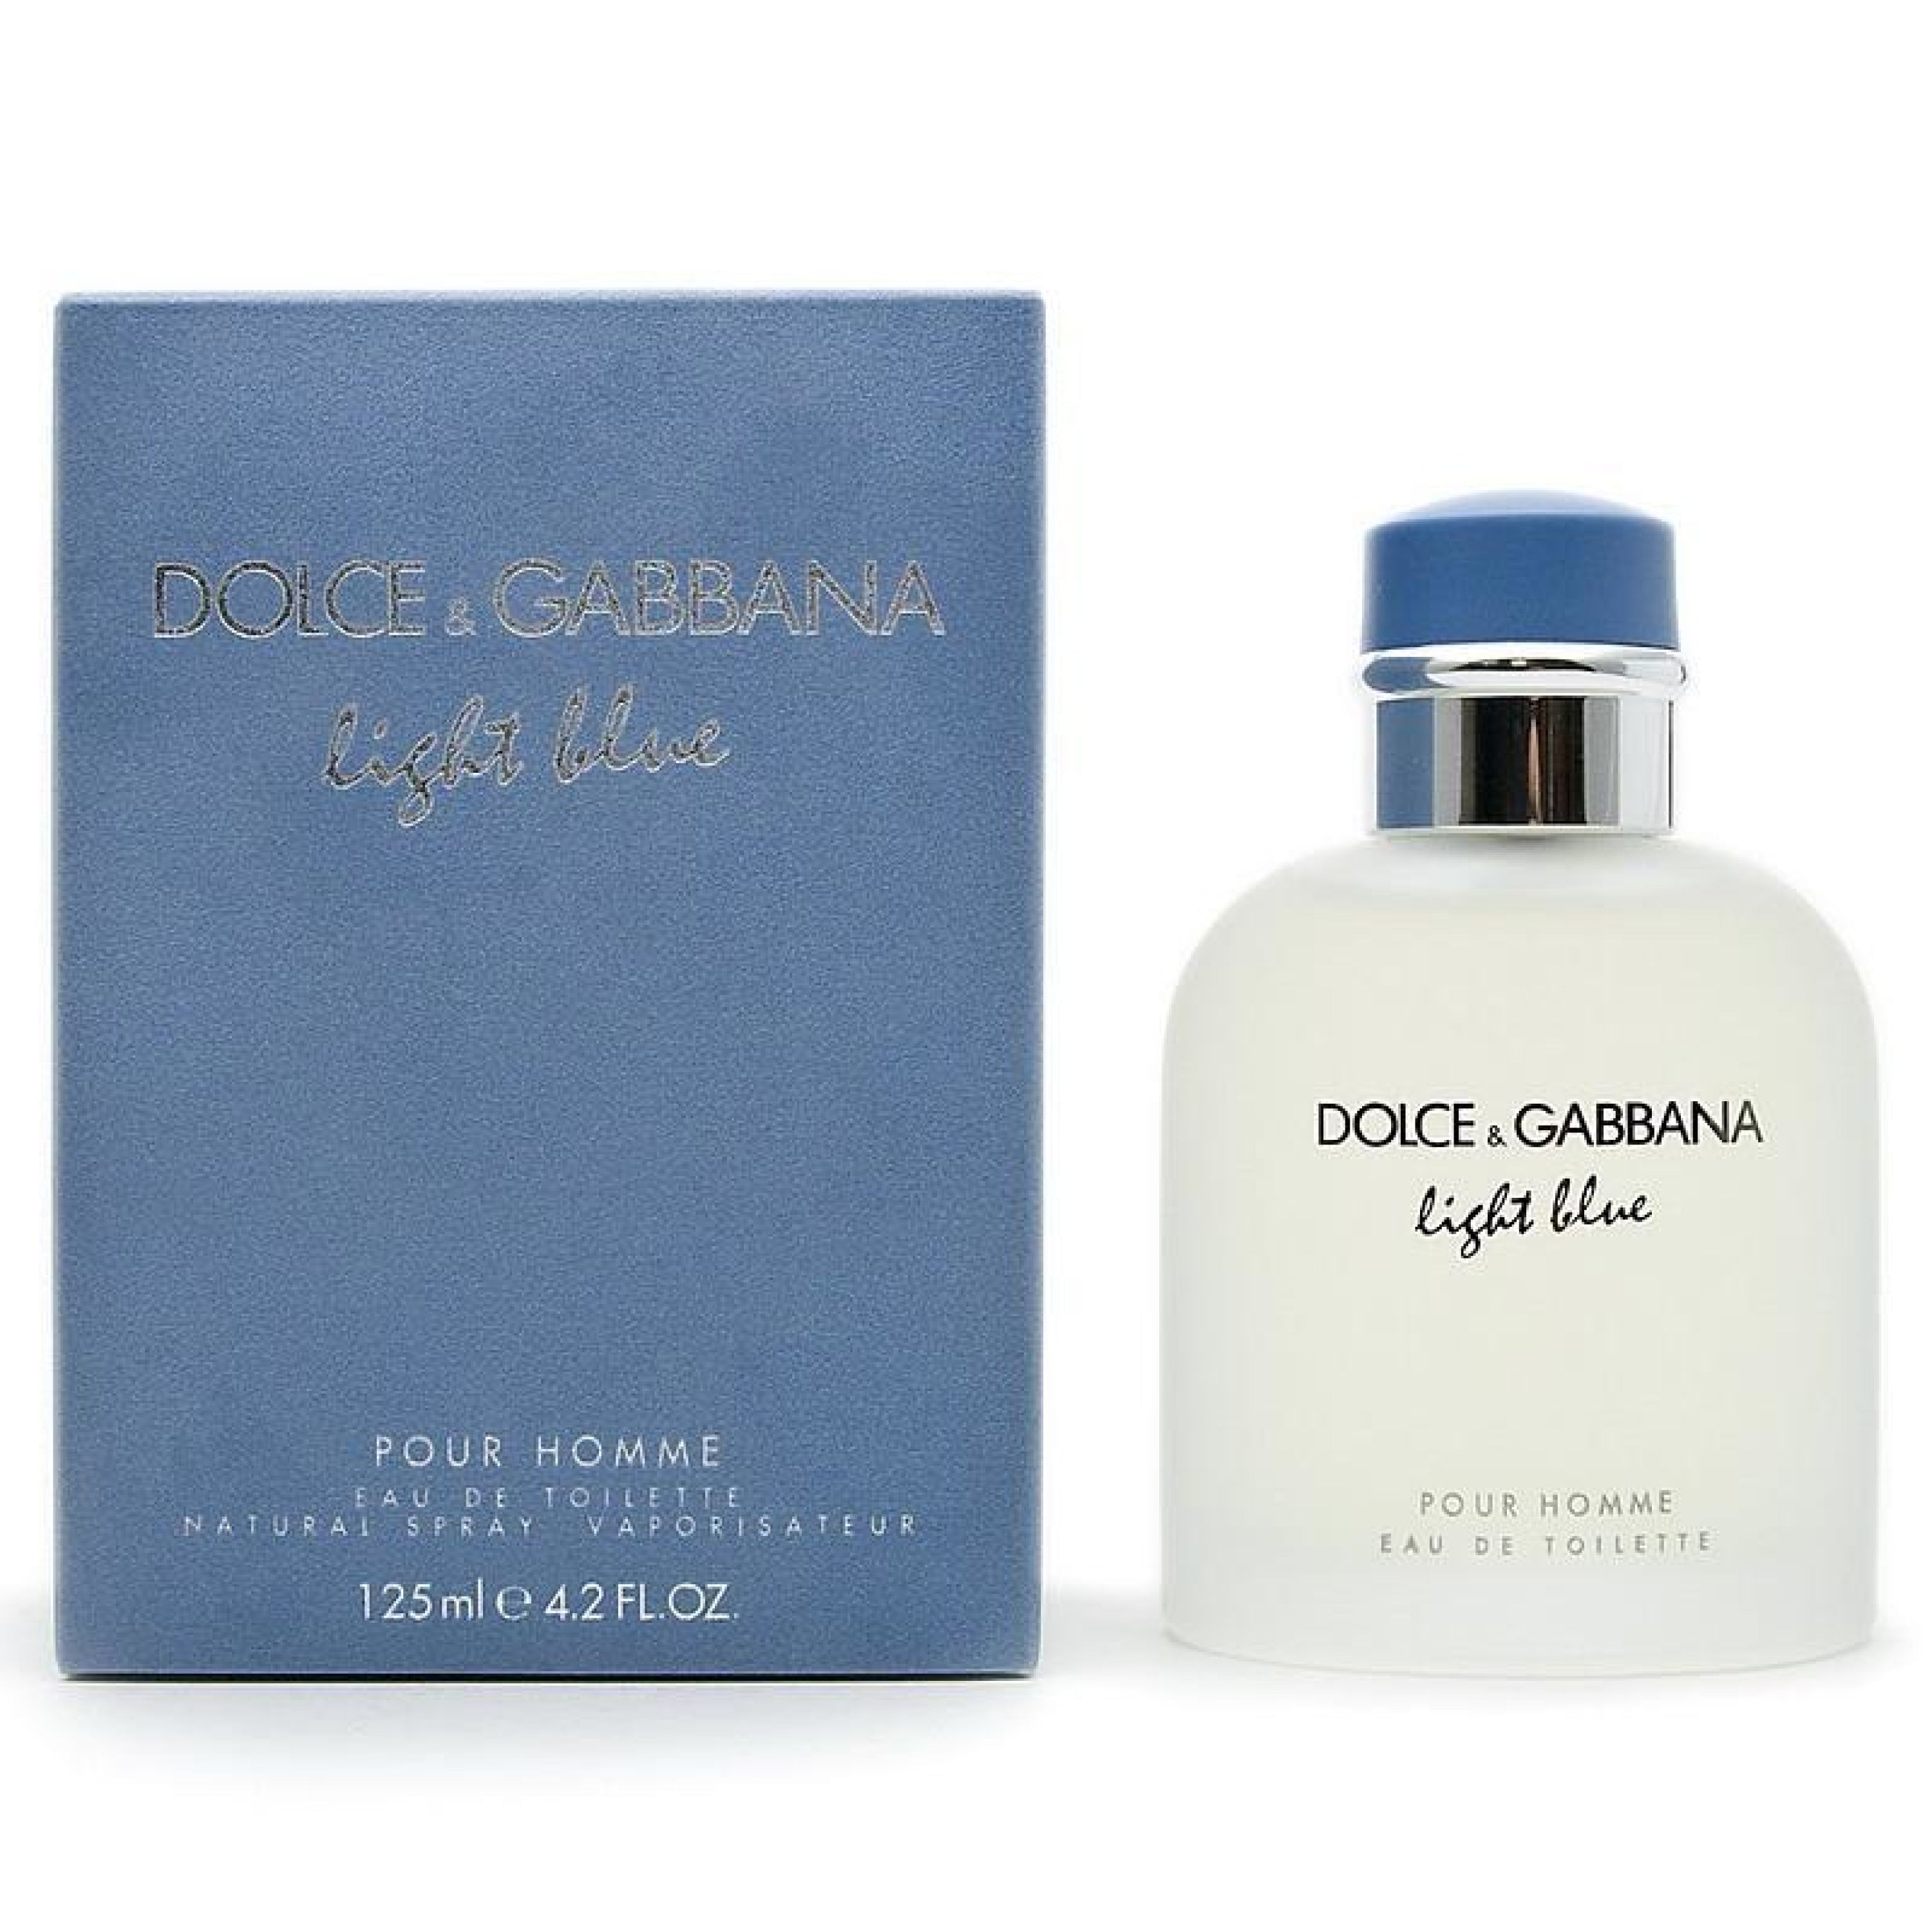 Туалетная мужская вода dolce. Dolce Gabbana Light Blue 125ml. Дольче Габбана "Light Blue pour homme" 125 ml. Dolce & Gabbana Light Blue pour homme EDT, 125 ml. Dolce Gabbana Light Blue pour homme.